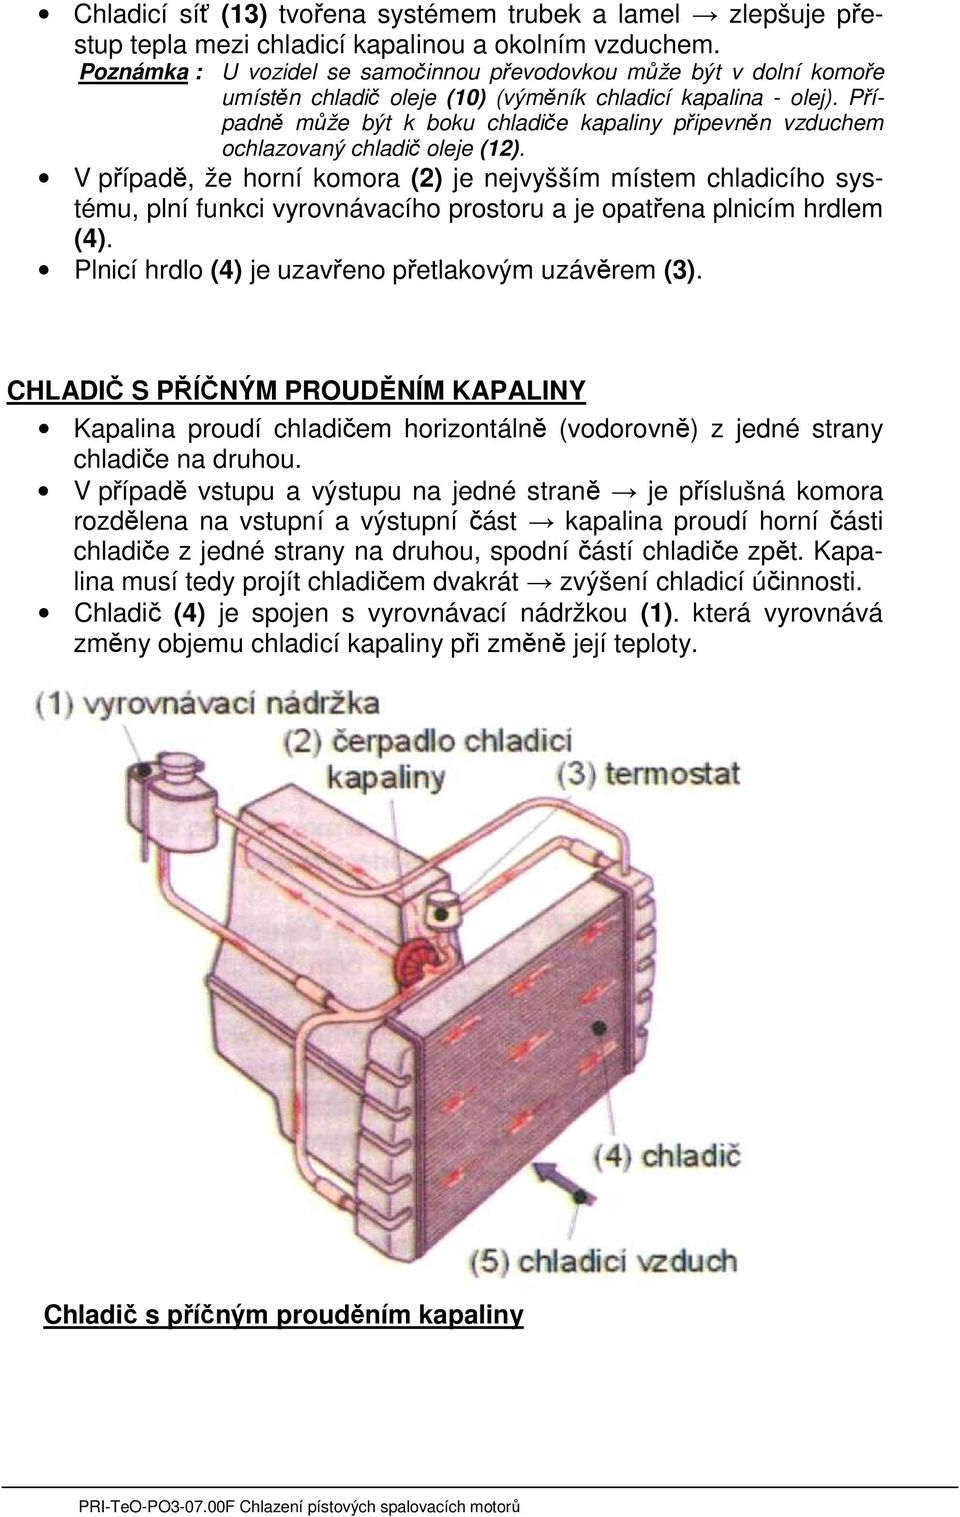 Případně může být k boku chladiče kapaliny připevněn vzduchem ochlazovaný chladič oleje (12).